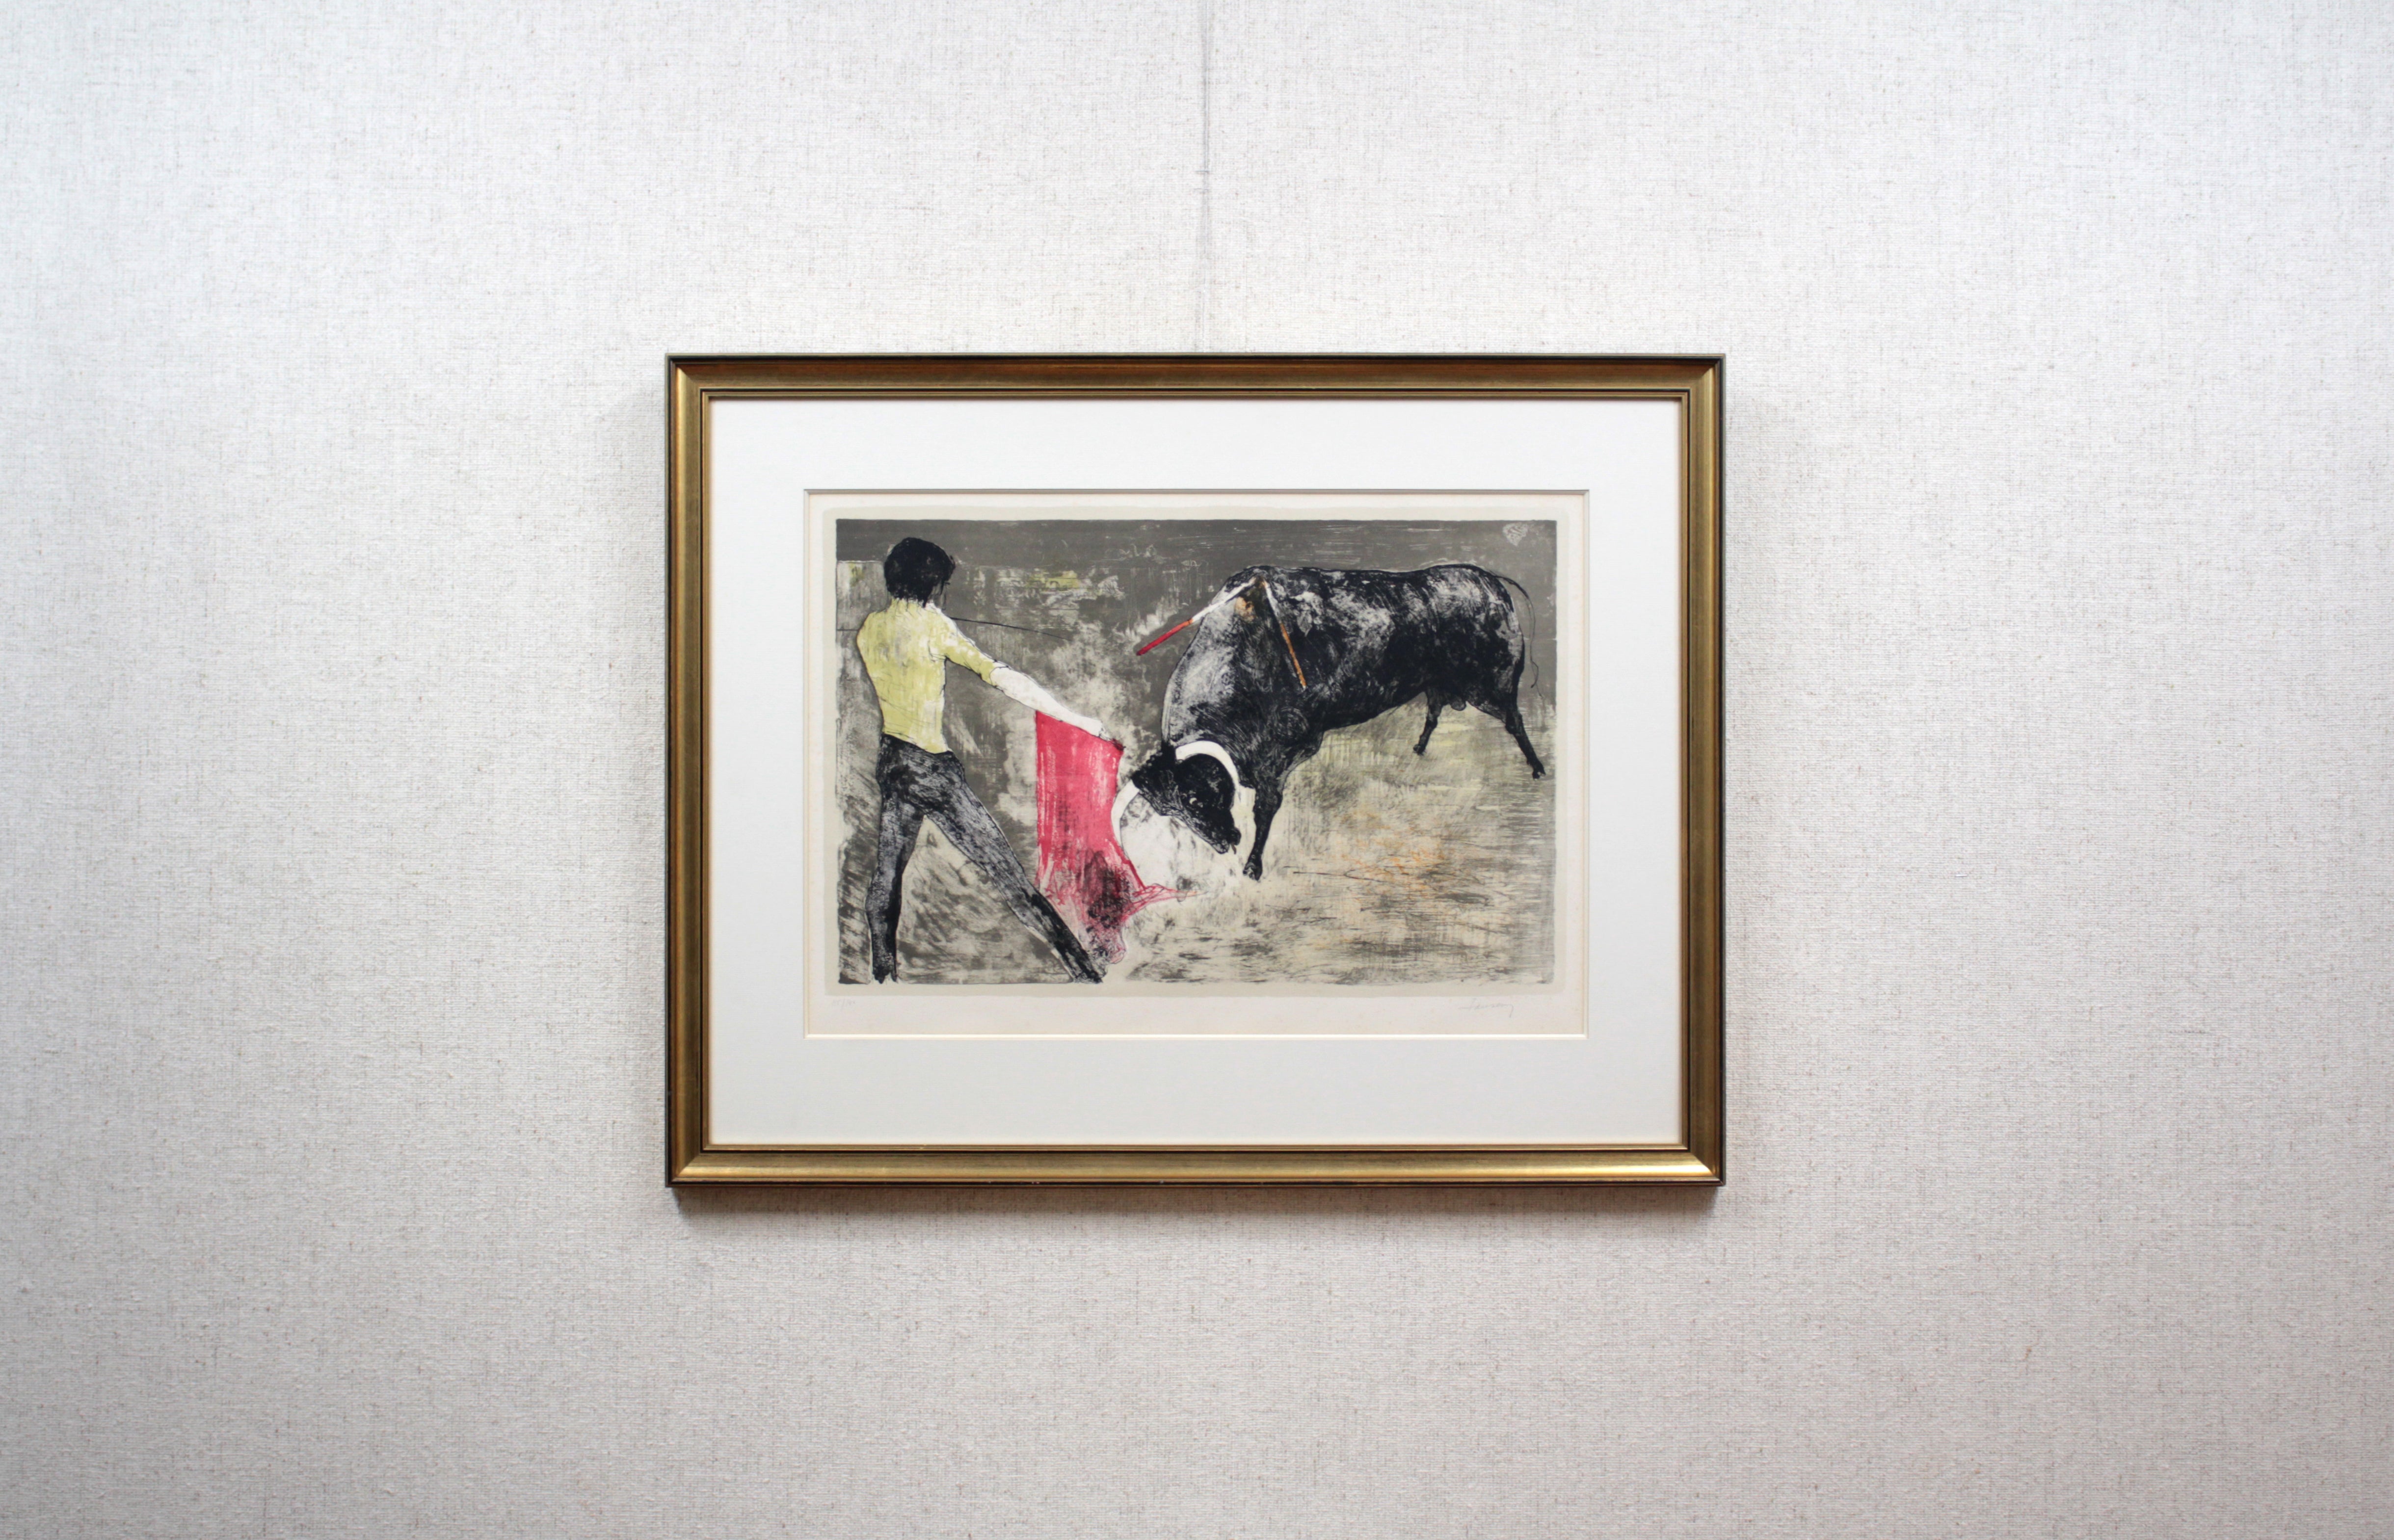 ジャン・ジャンセン 『闘牛』 リトグラフ - 北海道画廊